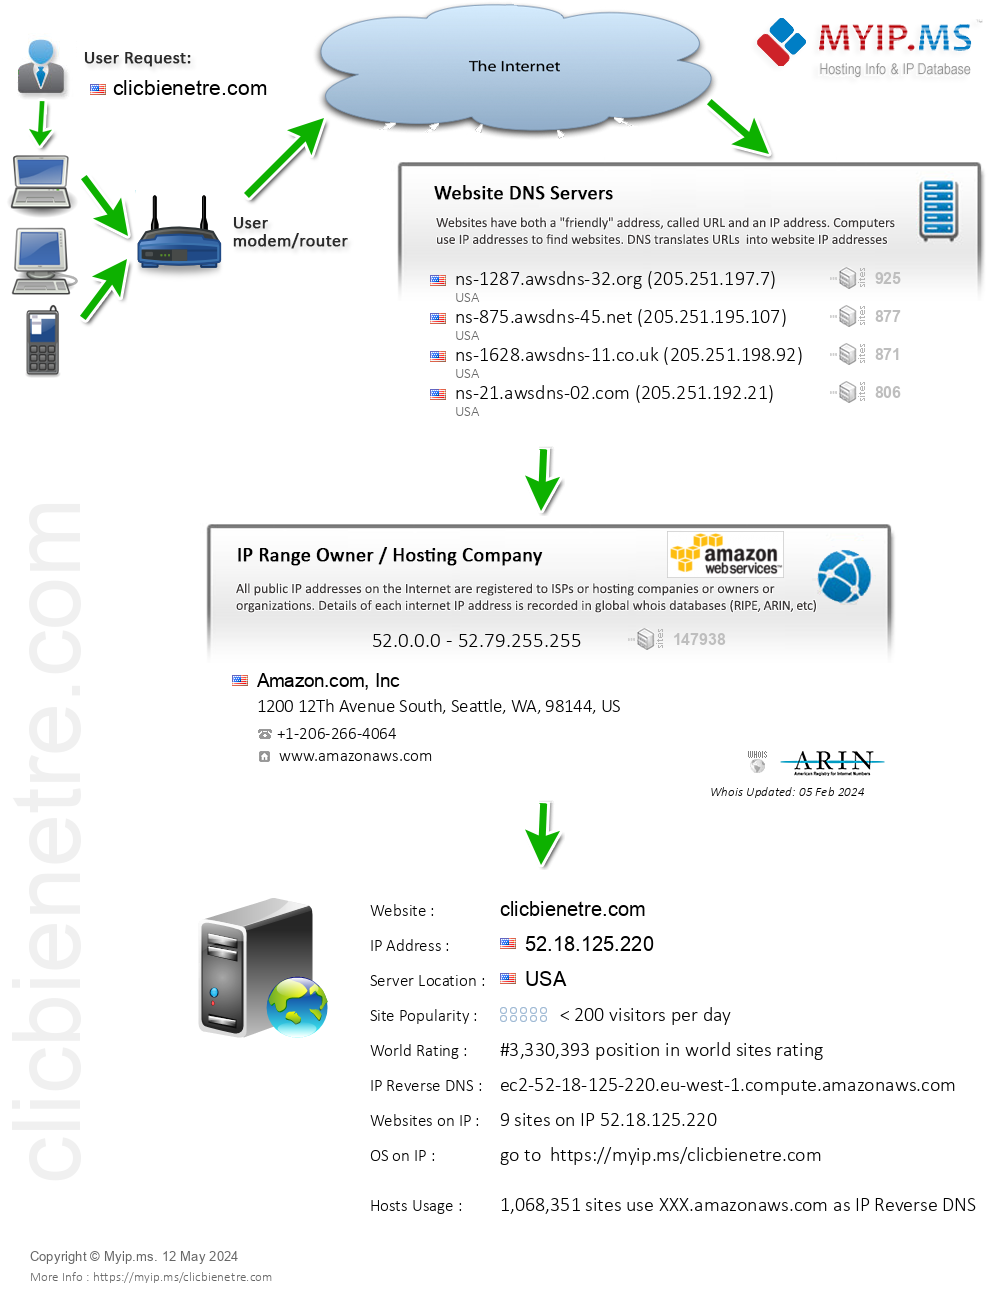 Clicbienetre.com - Website Hosting Visual IP Diagram